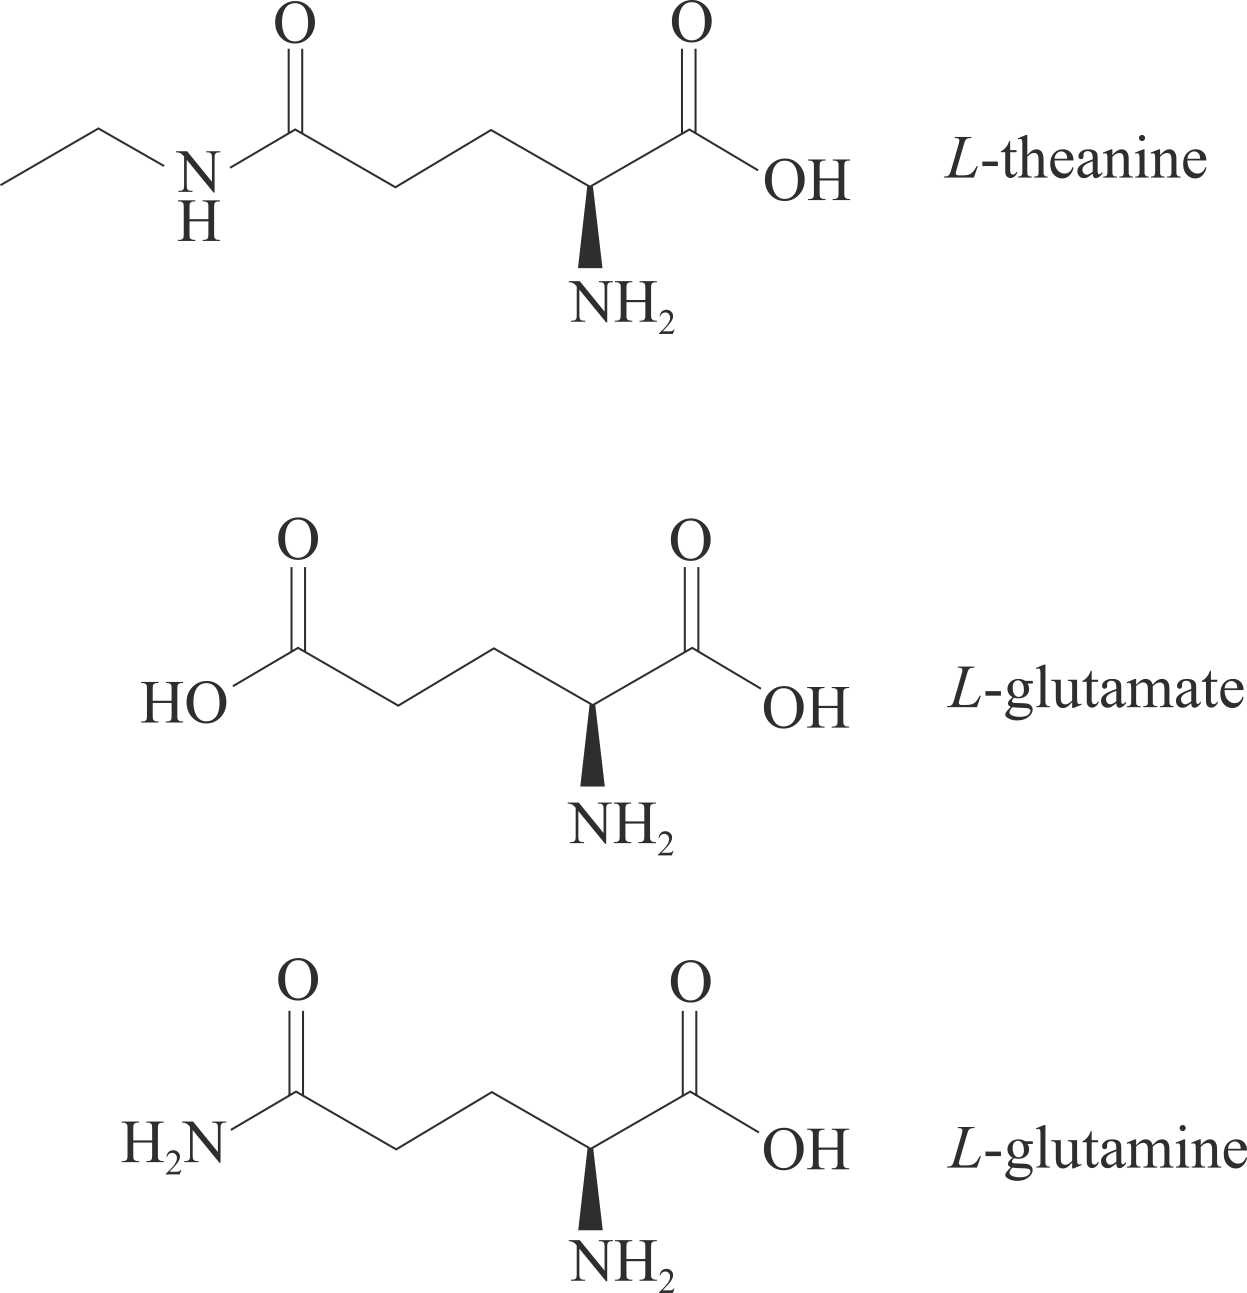 Schéma présentant les structures de la L-théanine, du L-glutamate et de la L-glutamine chimiquement proches